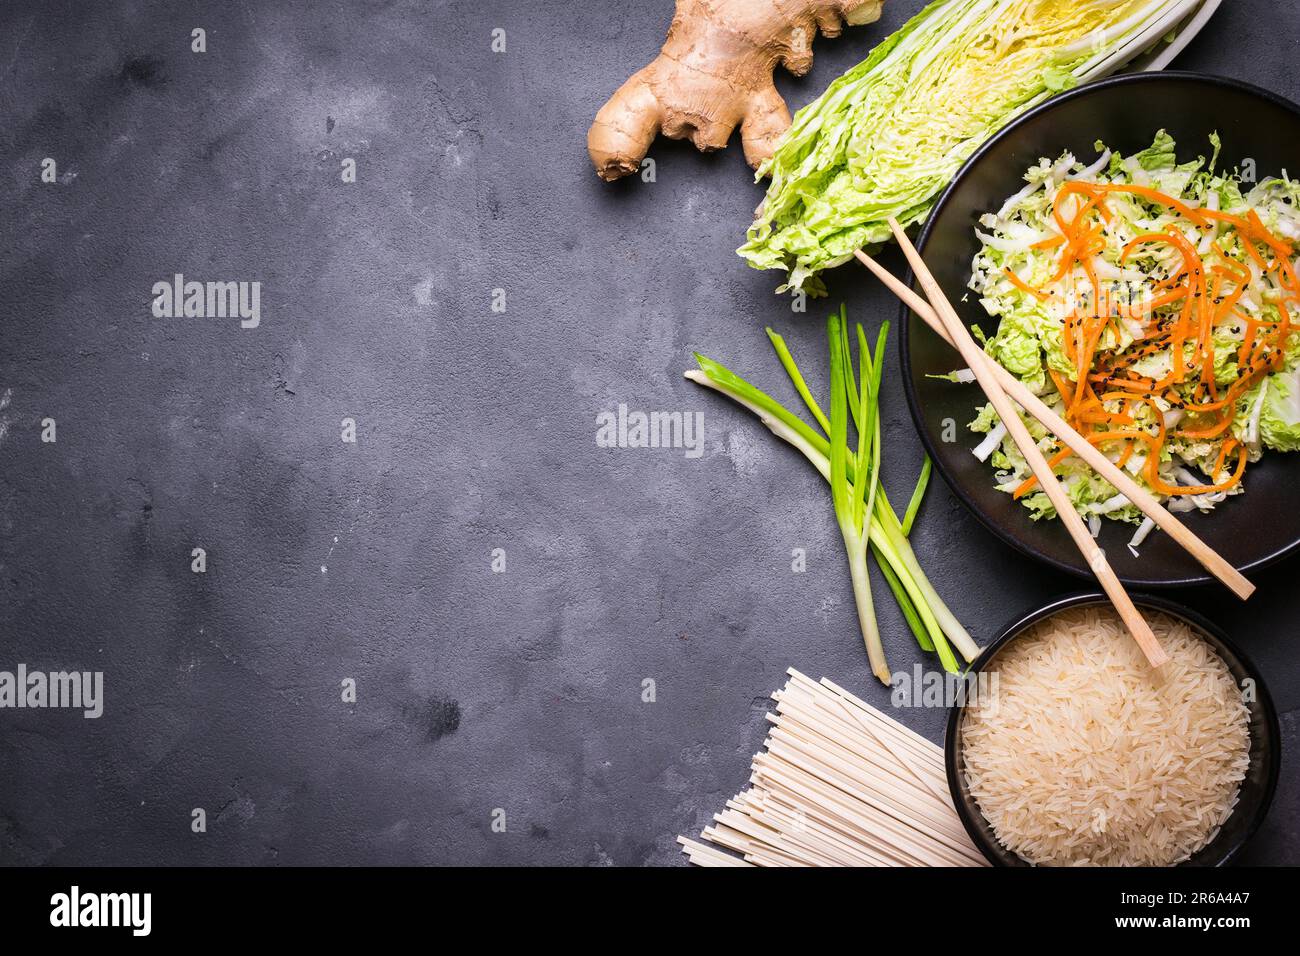 Zutaten für die Zubereitung des chinesischen Abendessens: Weizennudeln, Reis, napakohl, Ingwer, grüne Zwiebeln. Asiatische Kochzutaten. Draufsicht. Vorbereitung gesund Stockfoto